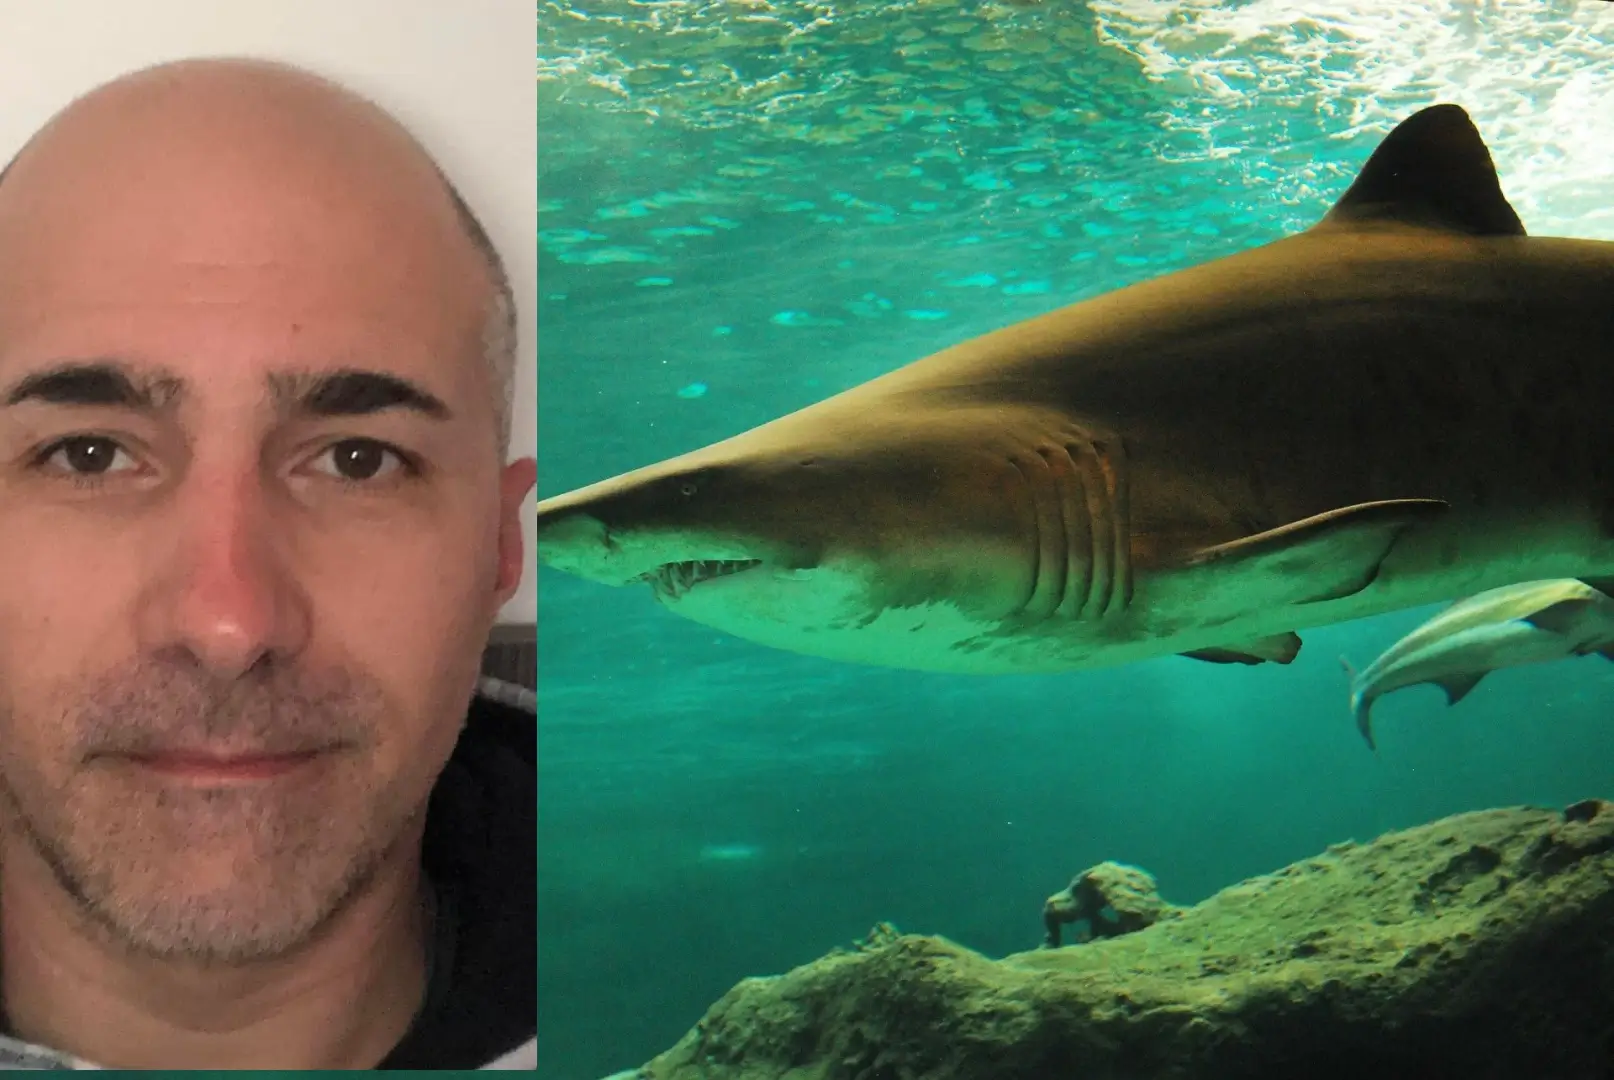 Puglia il racconto del bagnante attaccato da uno squalo “Sono vivo per miracolo”